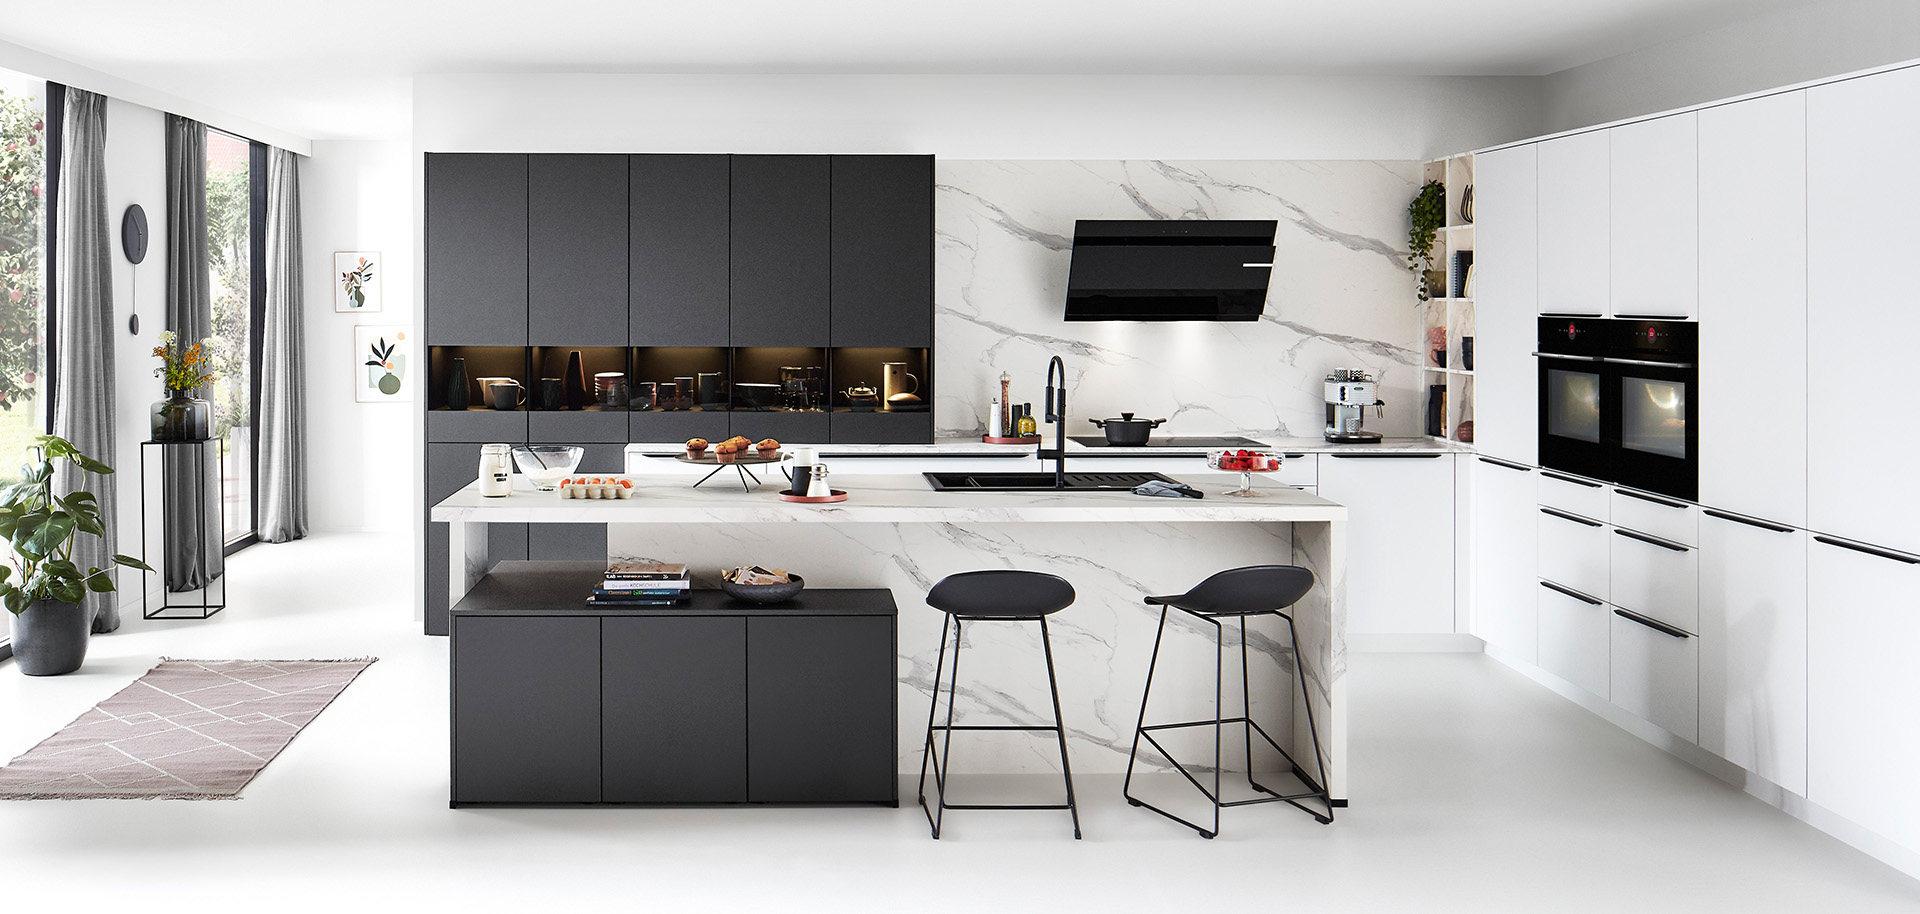 Cucina moderna con linee pulite che mostrano armadi bianchi, dettagli neri, rivestimento in marmo, elettrodomestici integrati e un'isola centrale con posti a sedere per sgabelli.